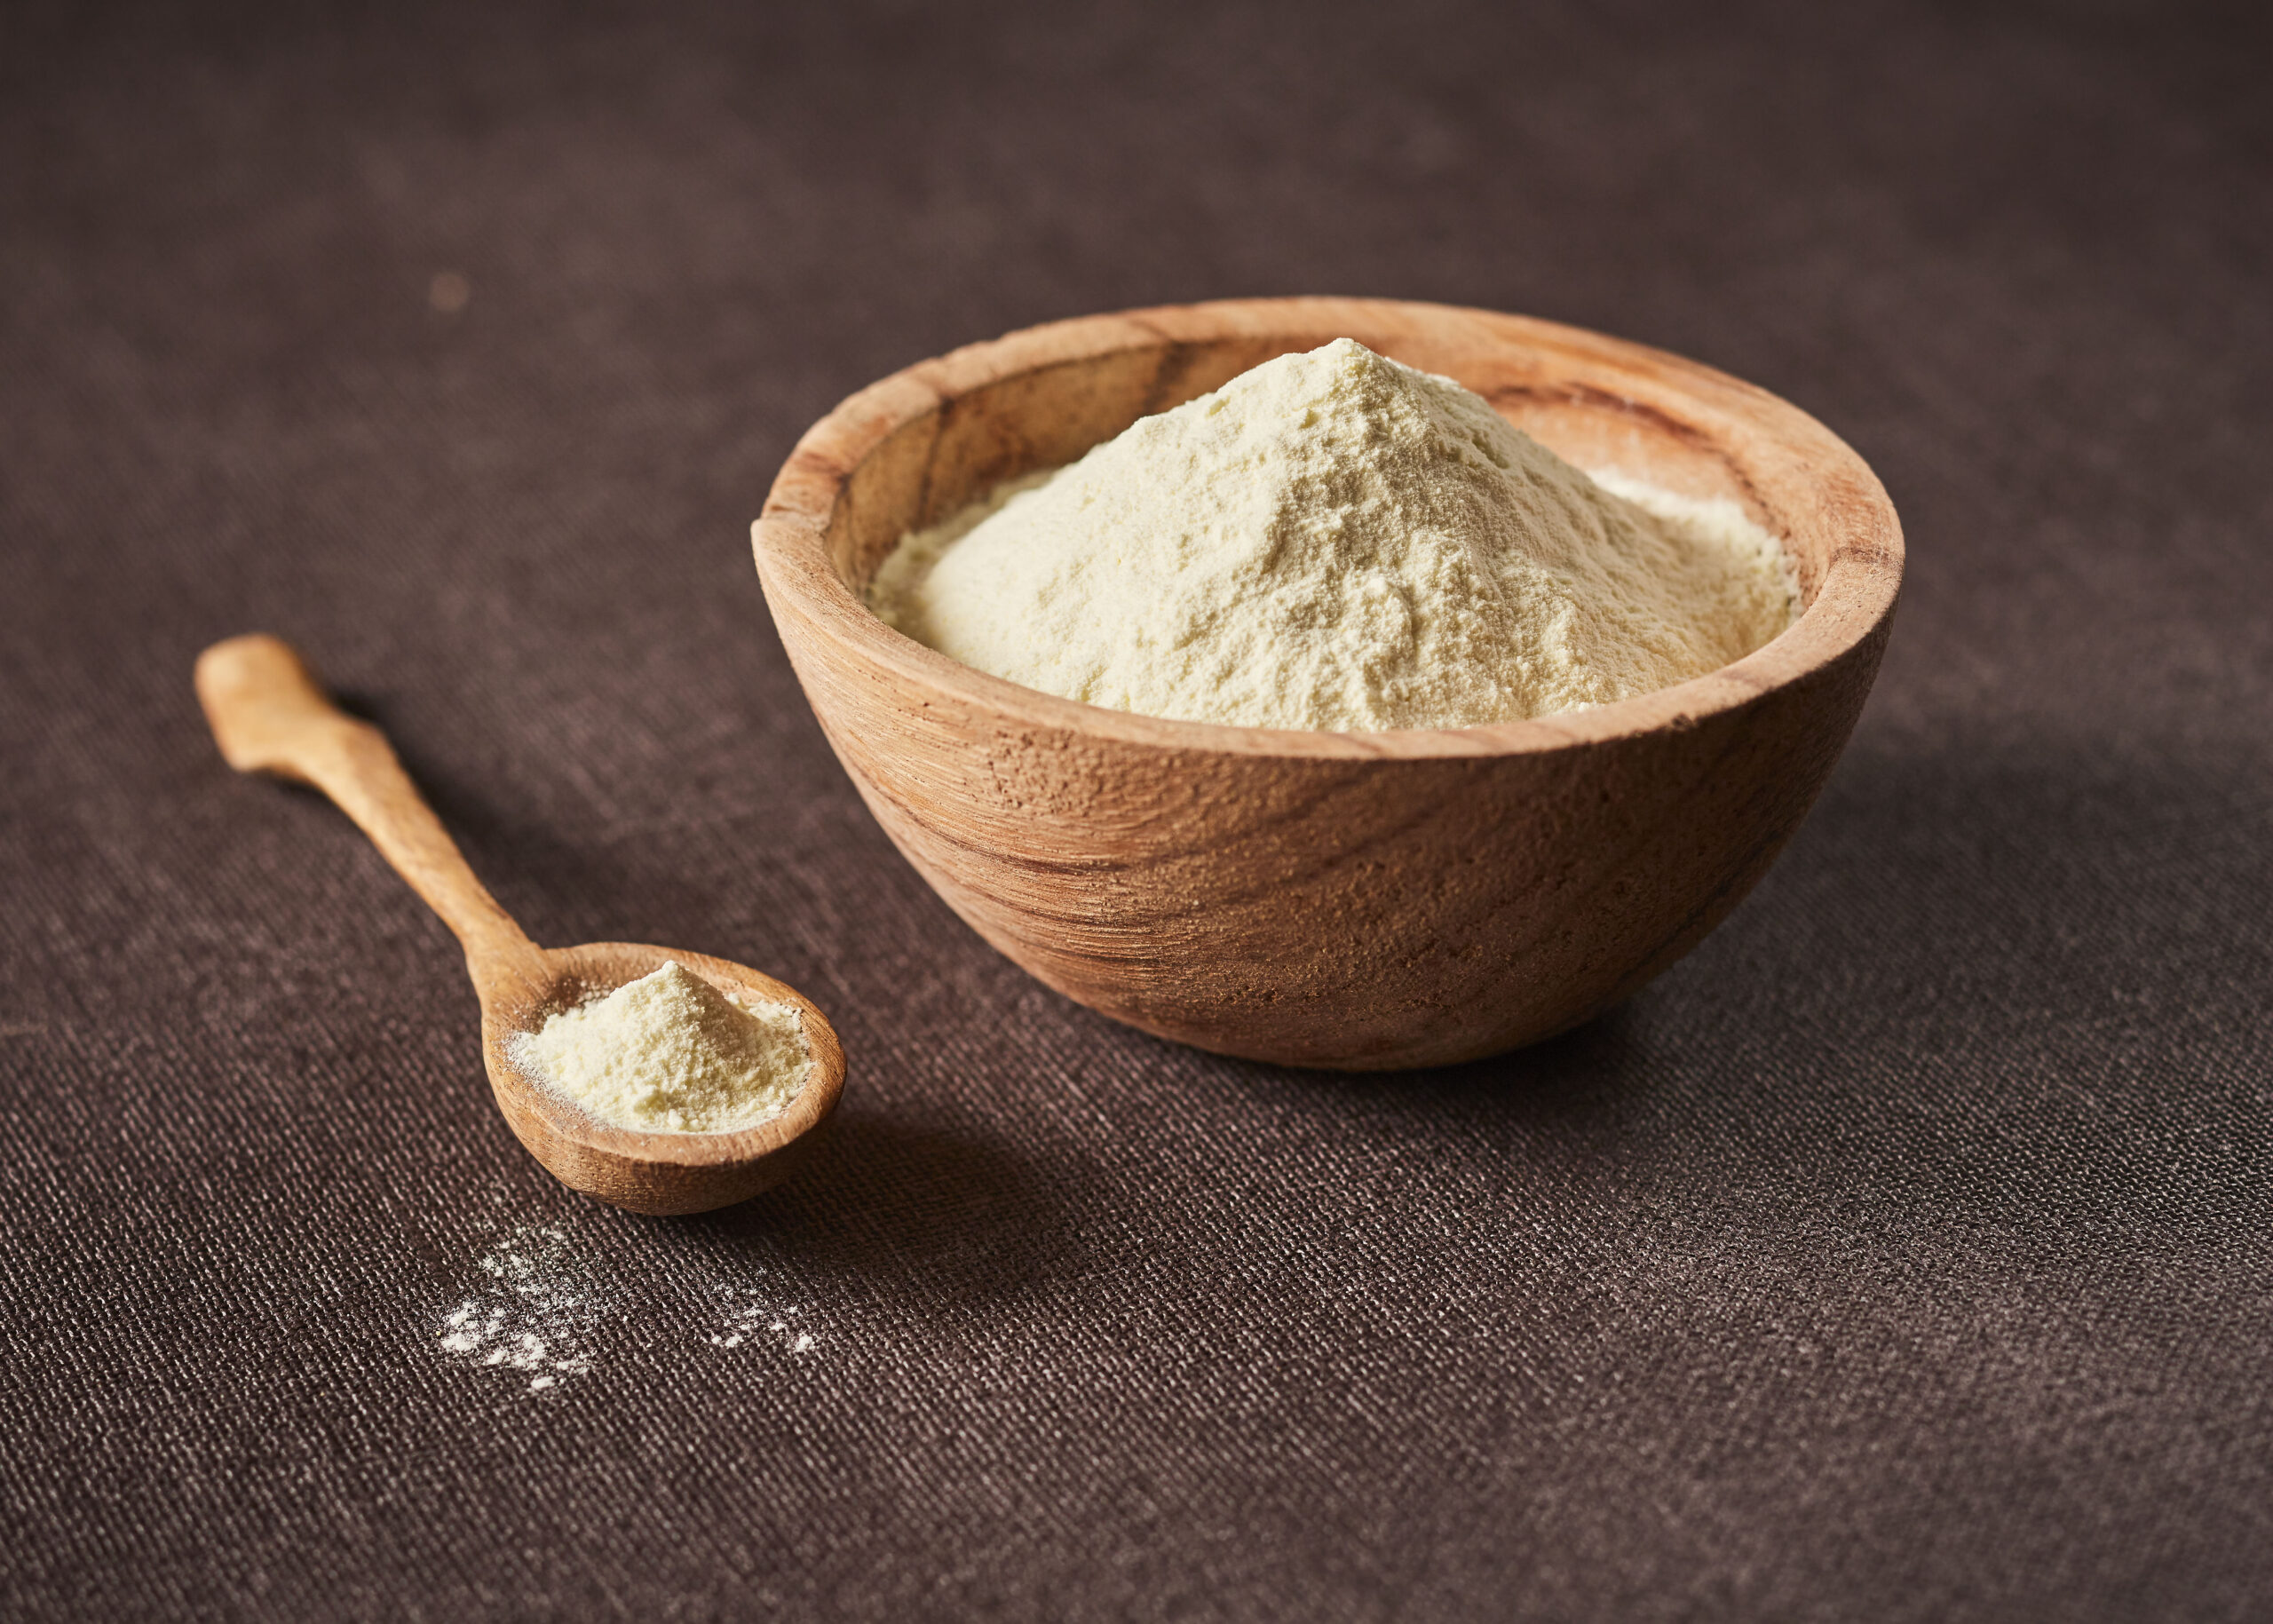 Ramaquin rond en bois contenant la poudre : Milk Salt disposé sur une nappe avec une cuillère en bois à côté contenant aussi cet ingrédient.